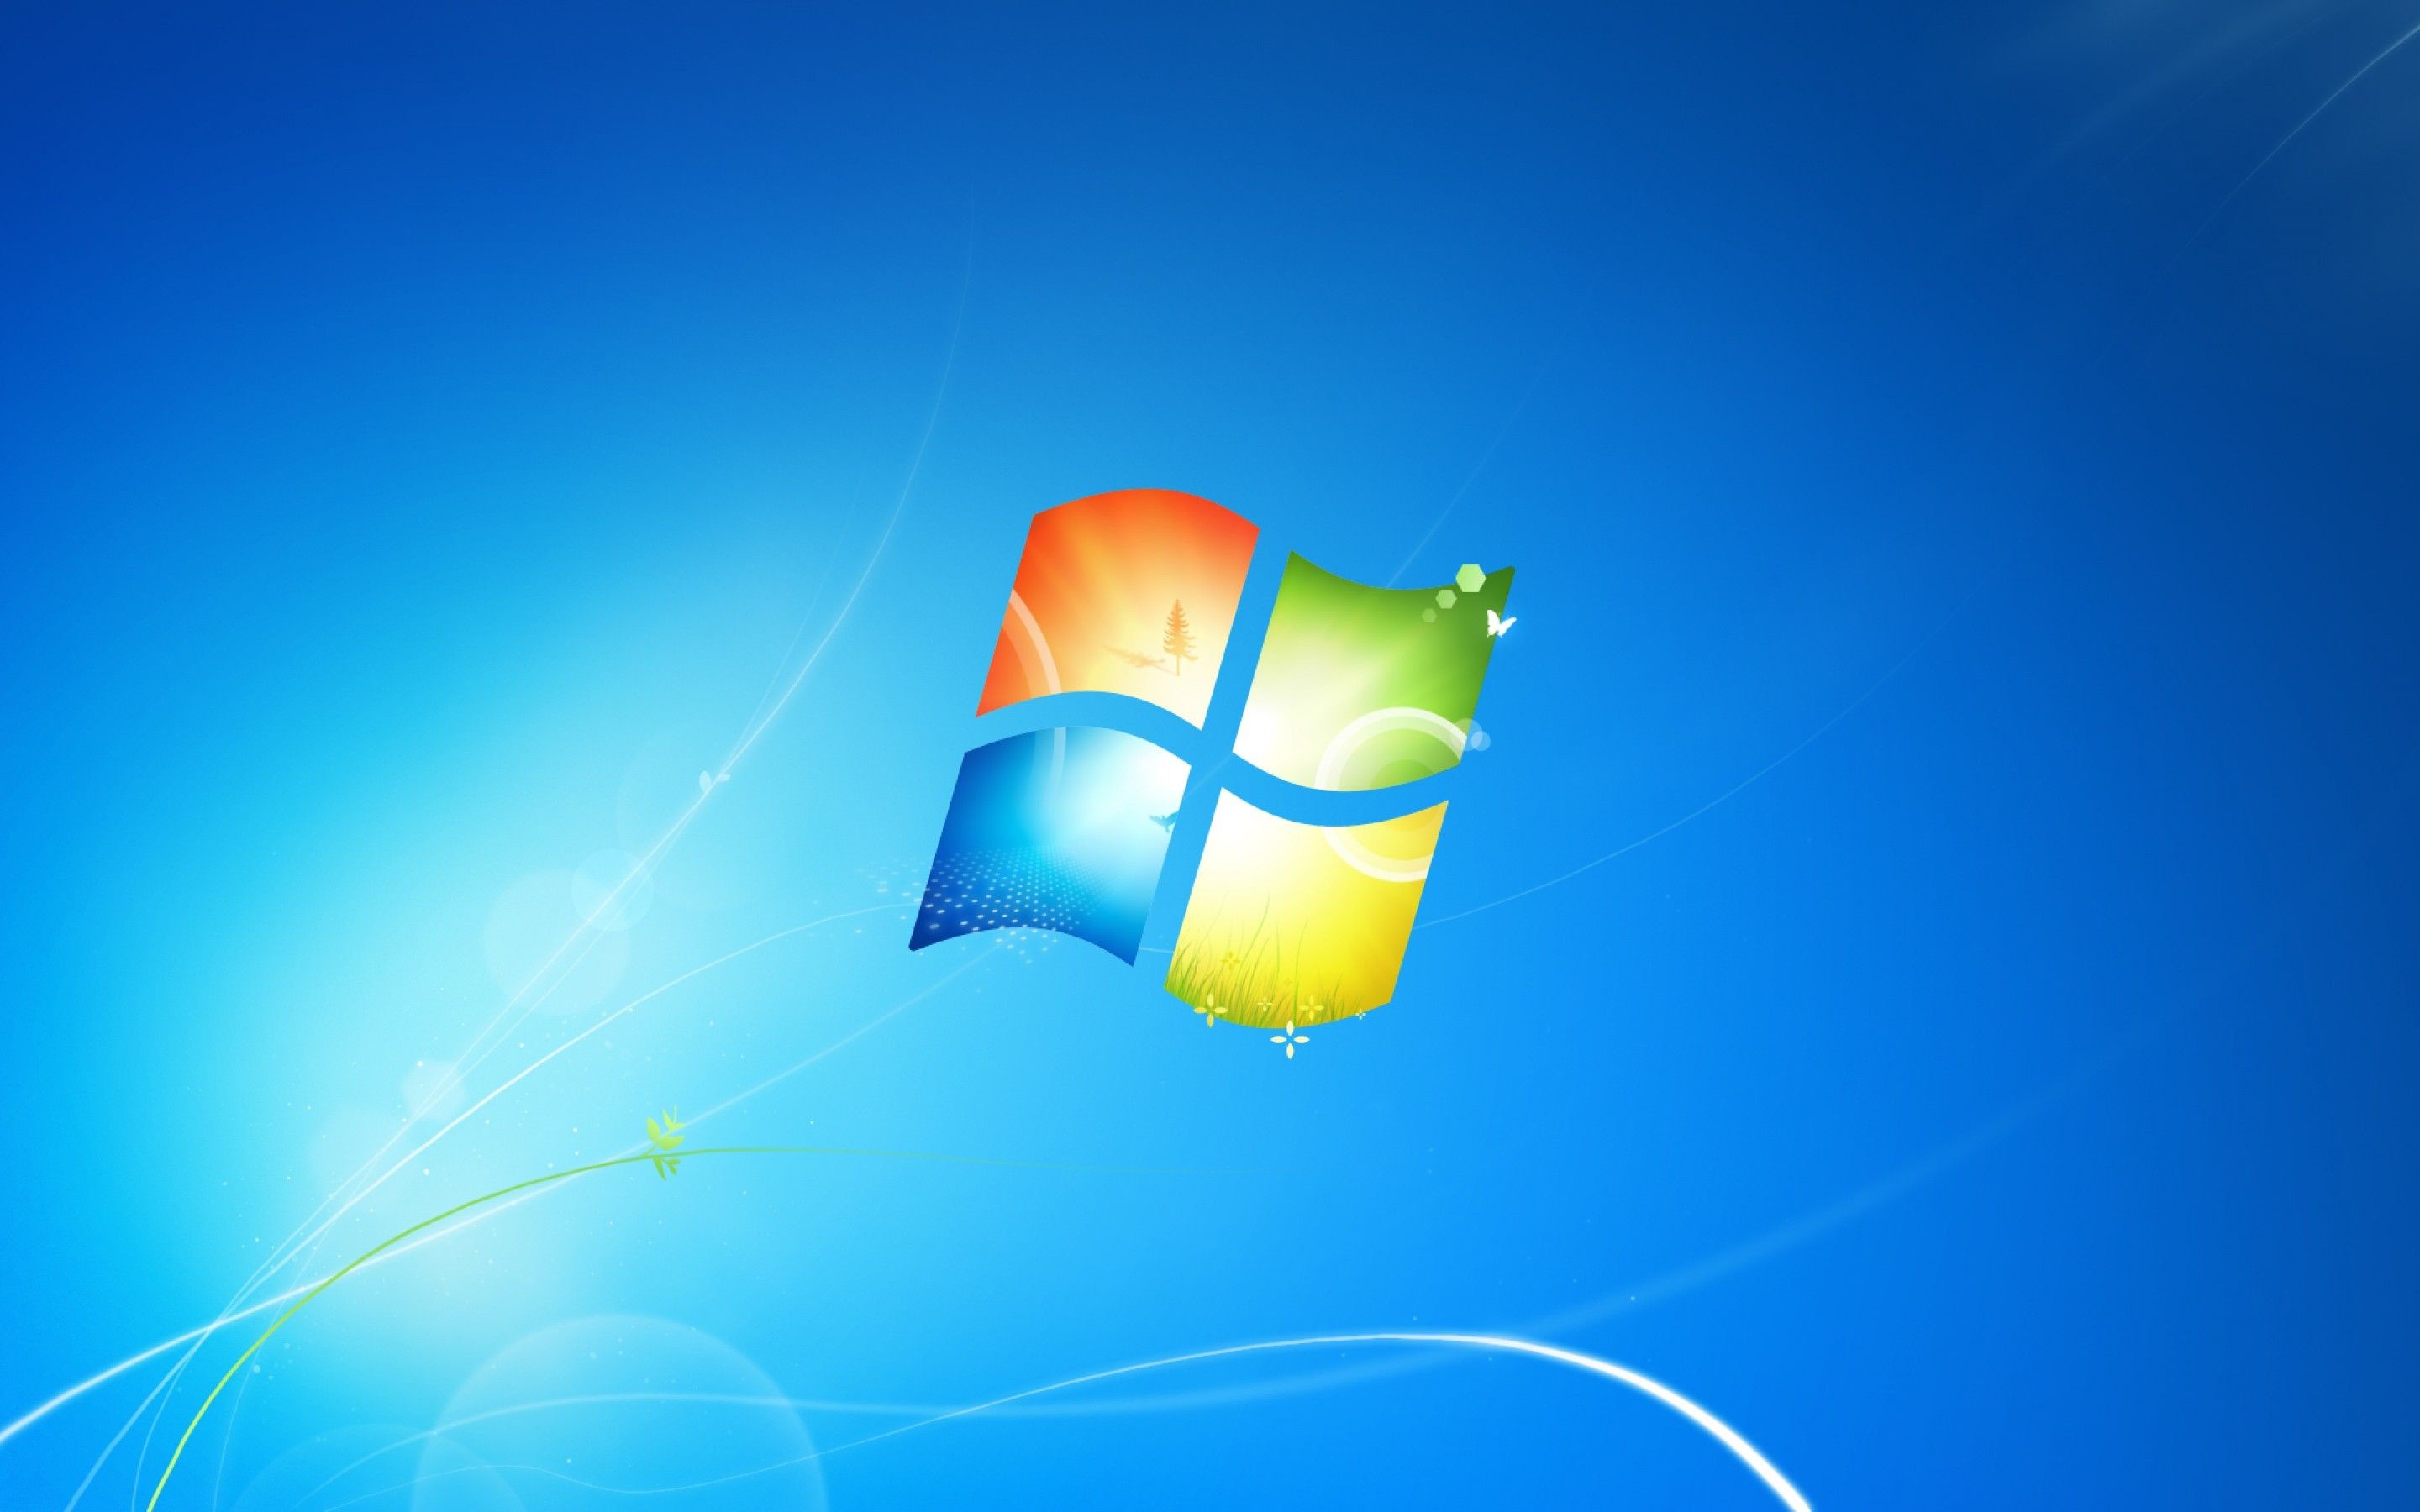 Microsoft desktop wallpaper images